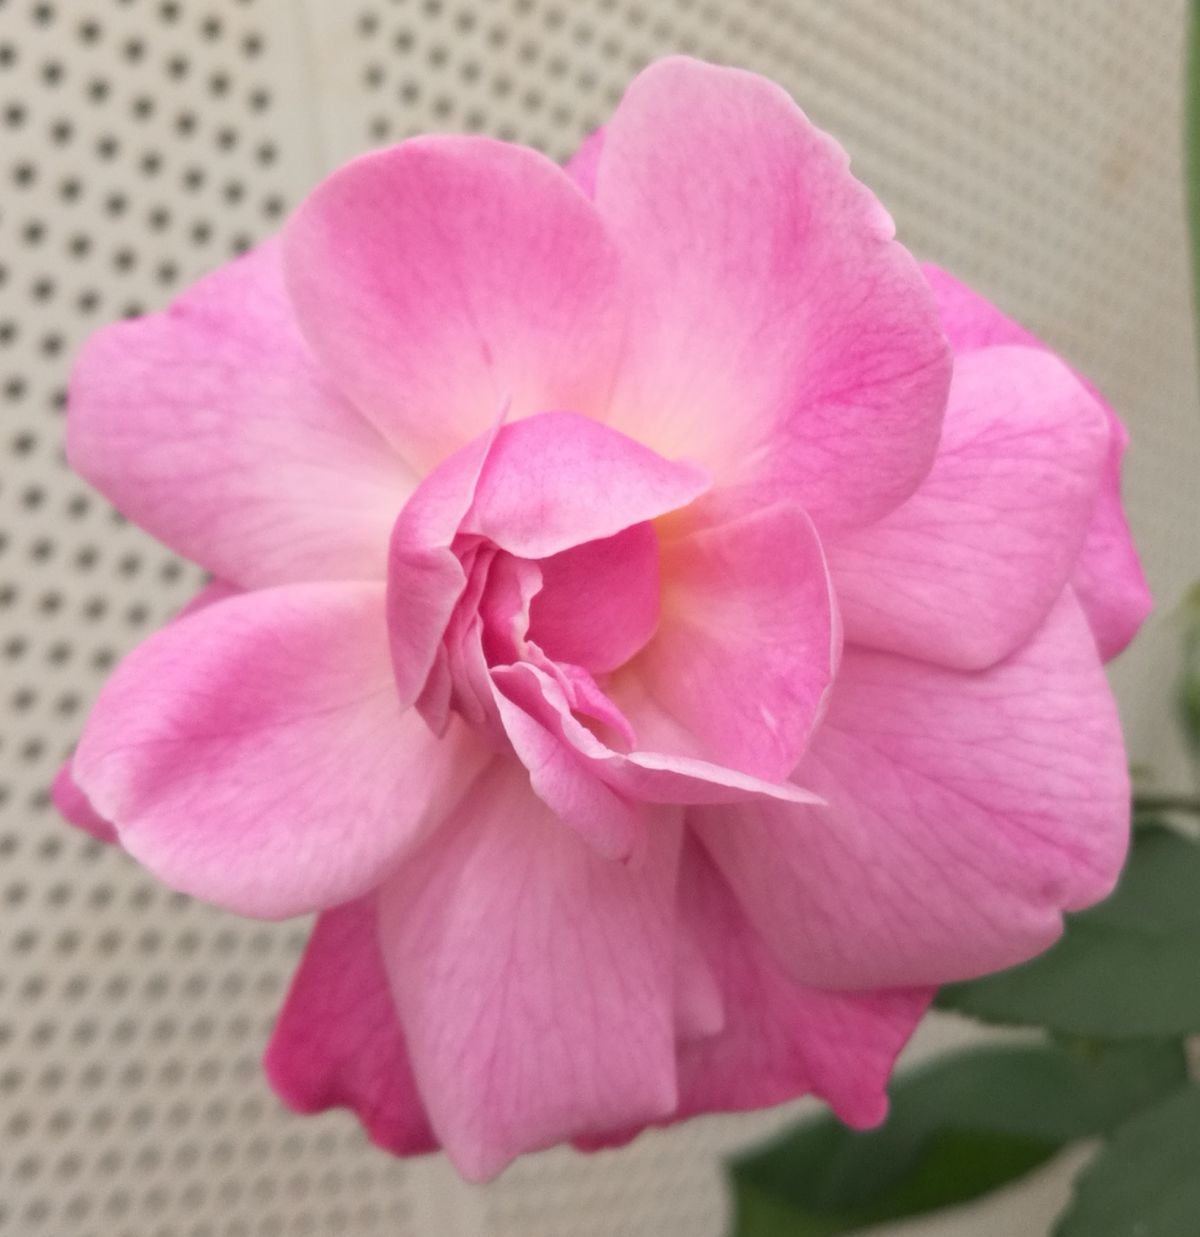 Das Genom von Rosa chinensis 'Old Blush' wurde sequenziert. 'Old Blush' stammt aus China, blüht mehrmals im Jahr und gilt als wichtiger Vorfahre der modernen Rosensorten.